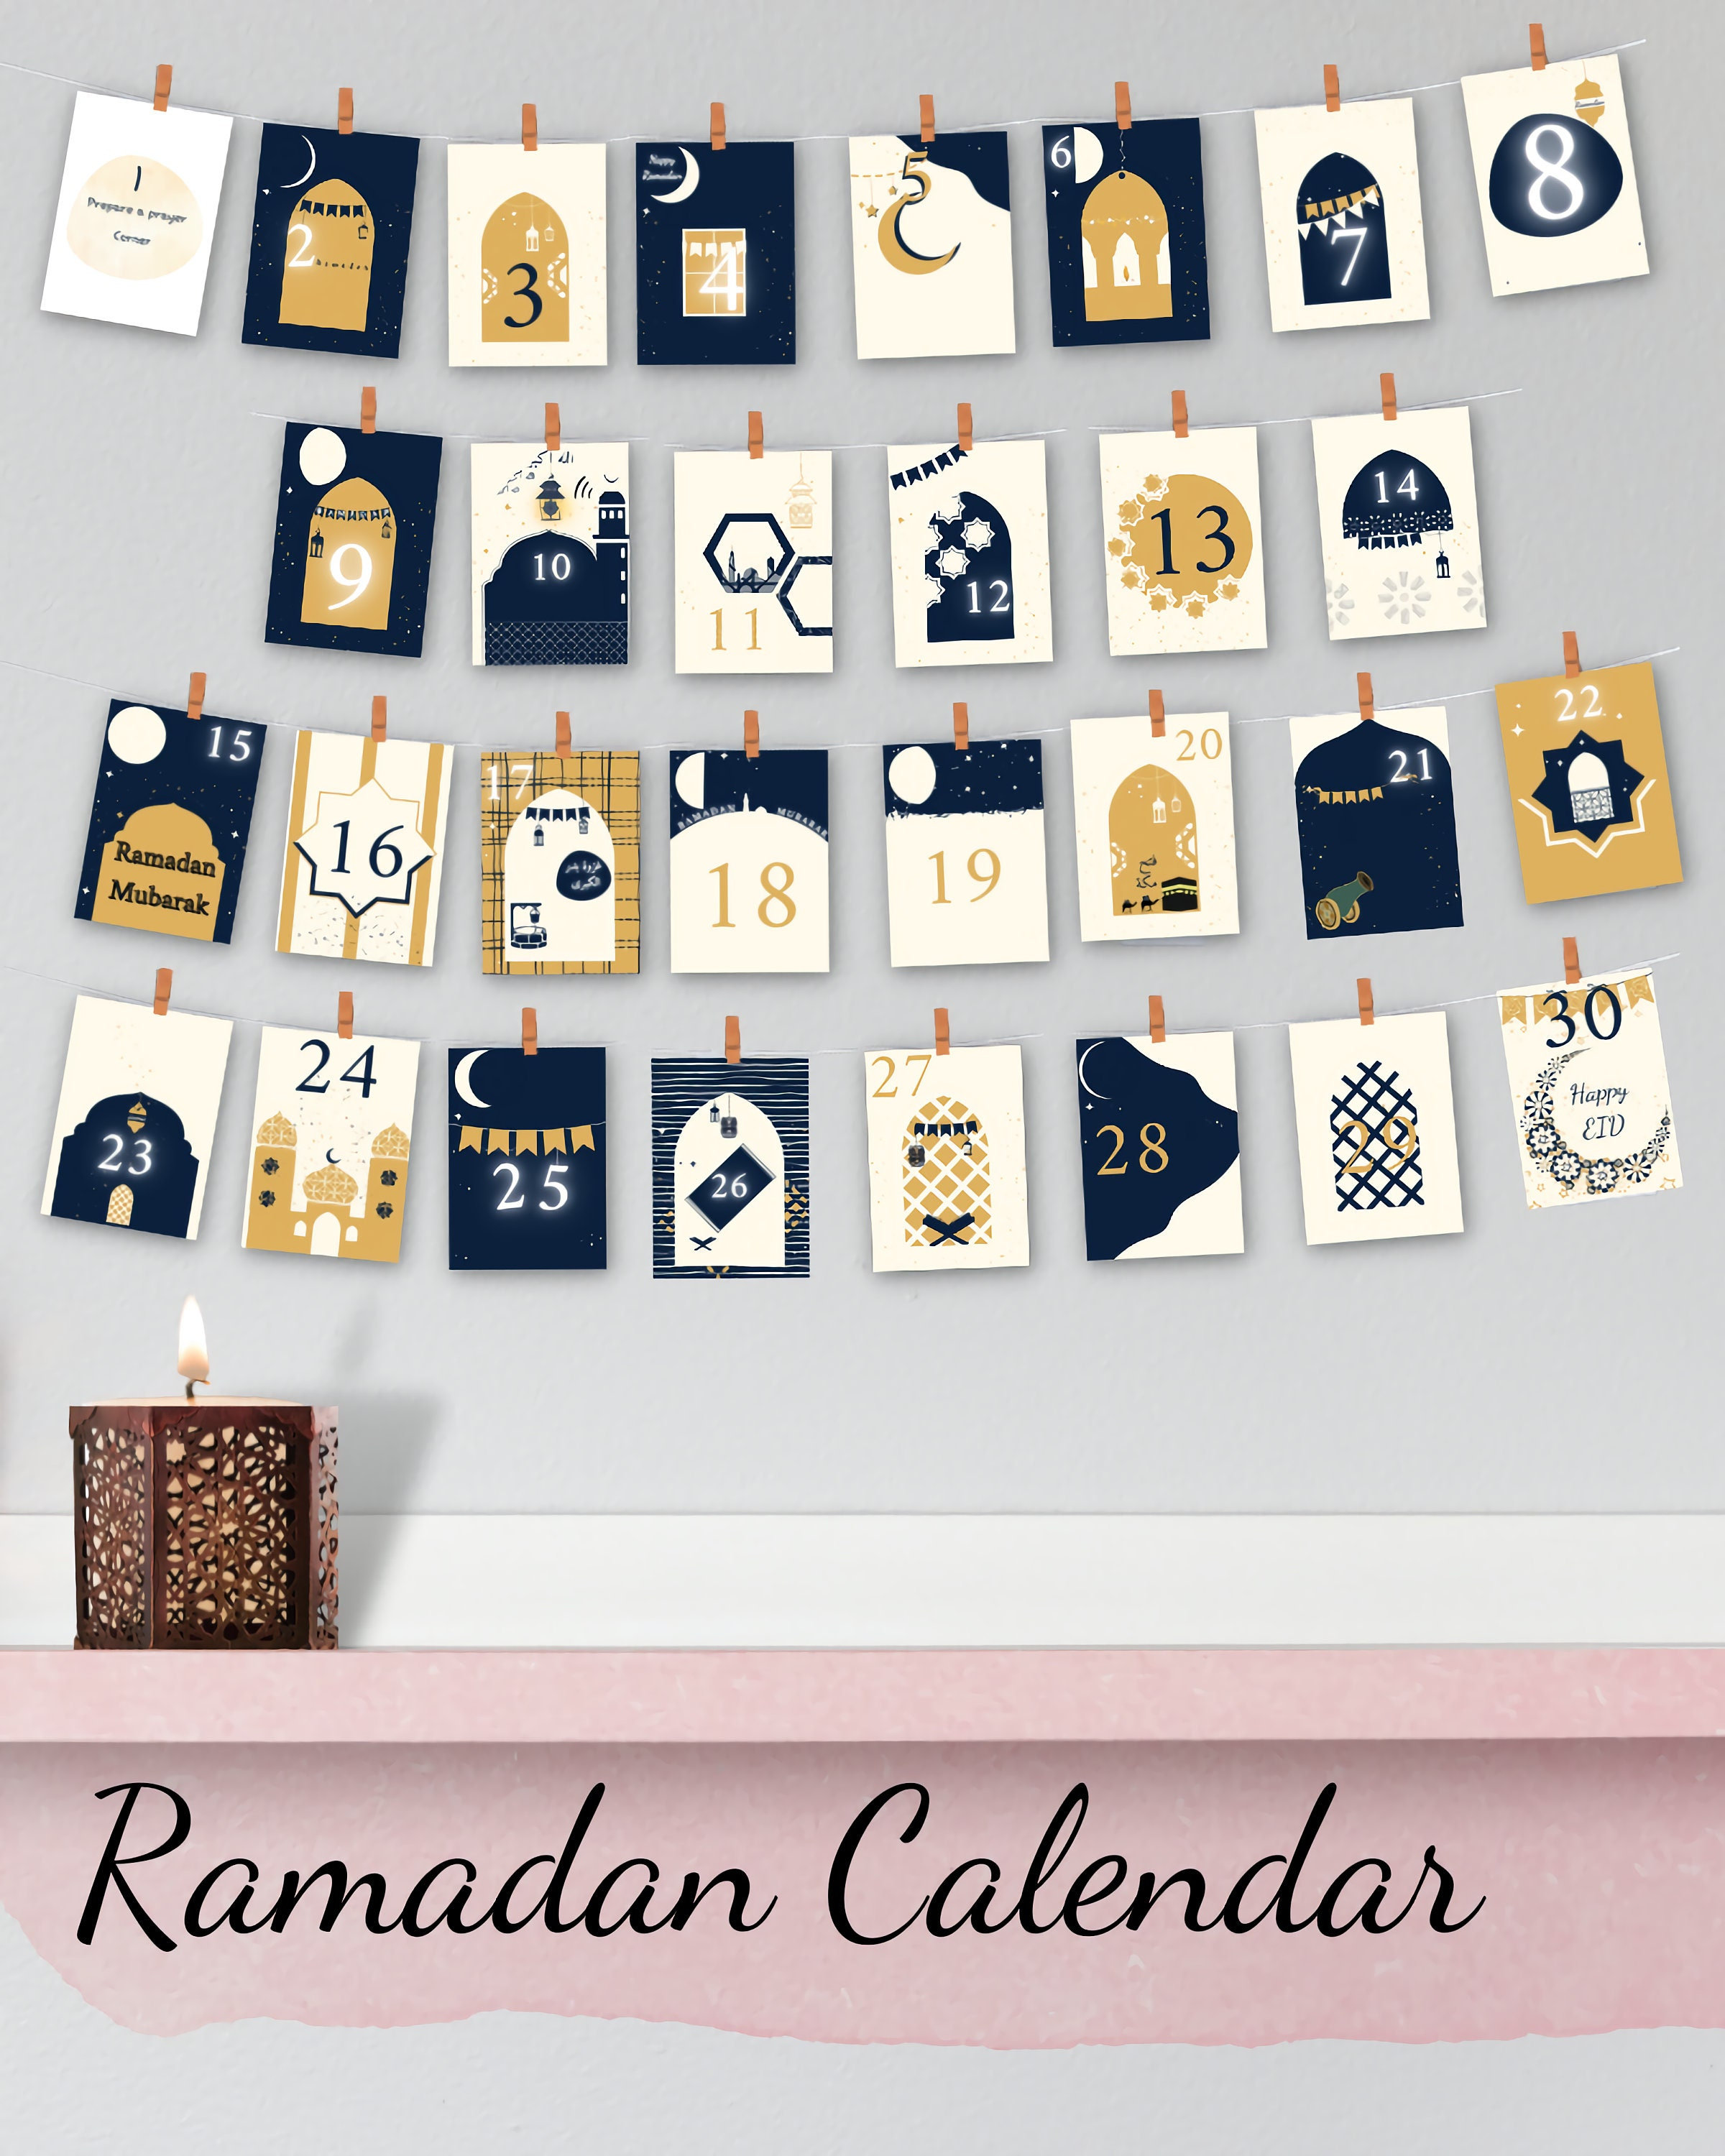 Compte à rebours pour le calendrier du Ramadan de Binance :  #ExchangeWithKindness